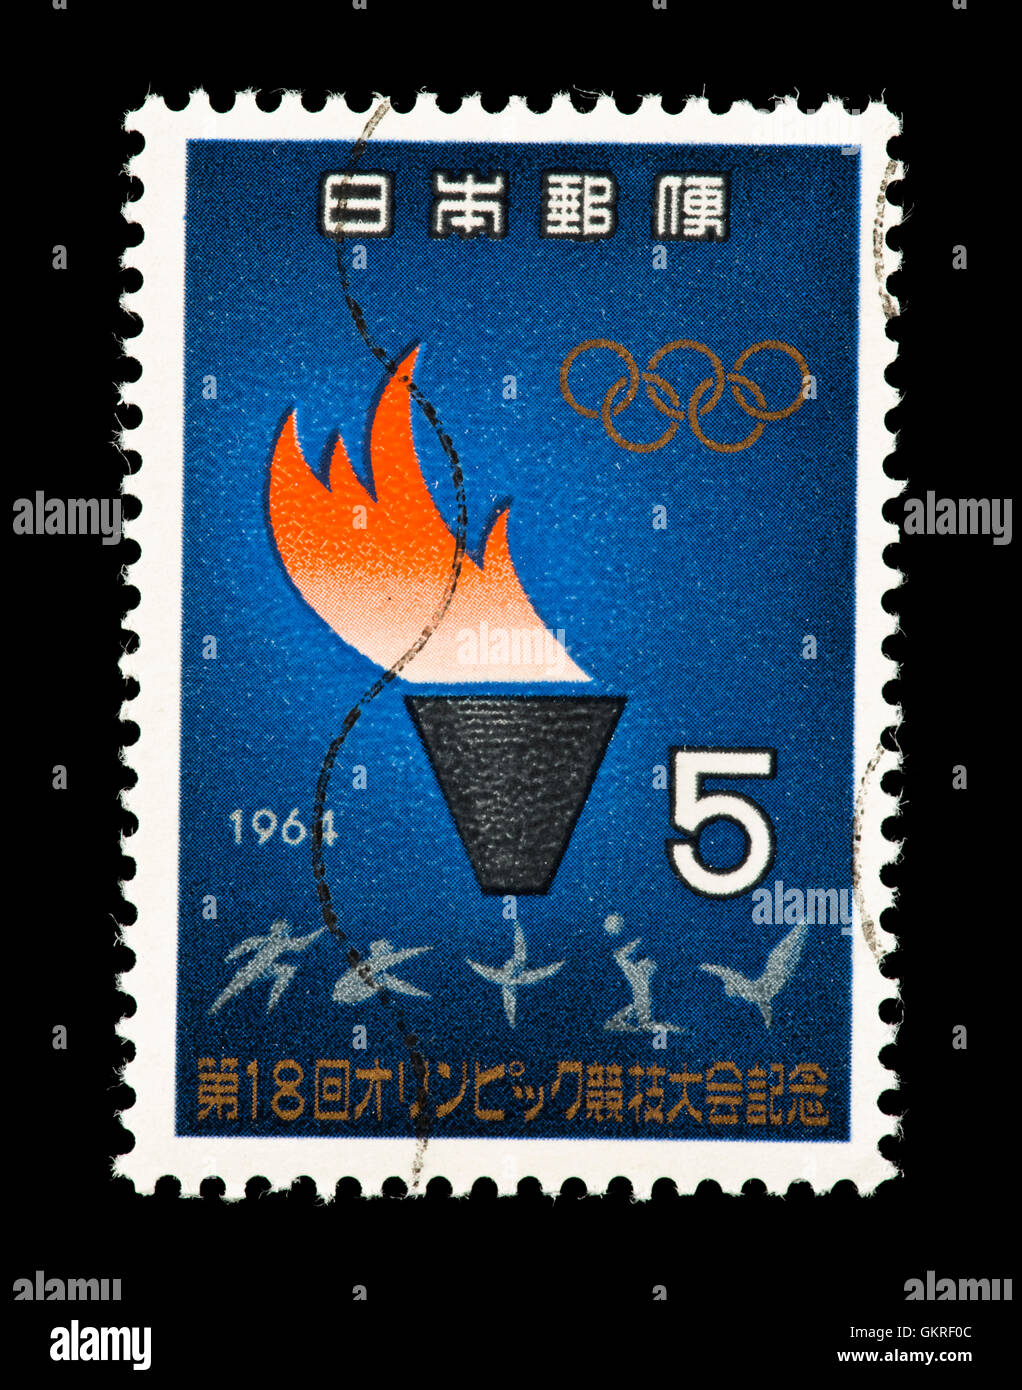 Timbre-poste du Japon représentant la flamme olympique et les athlètes des Jeux Olympiques d'été de 1964, à Tokyo Banque D'Images